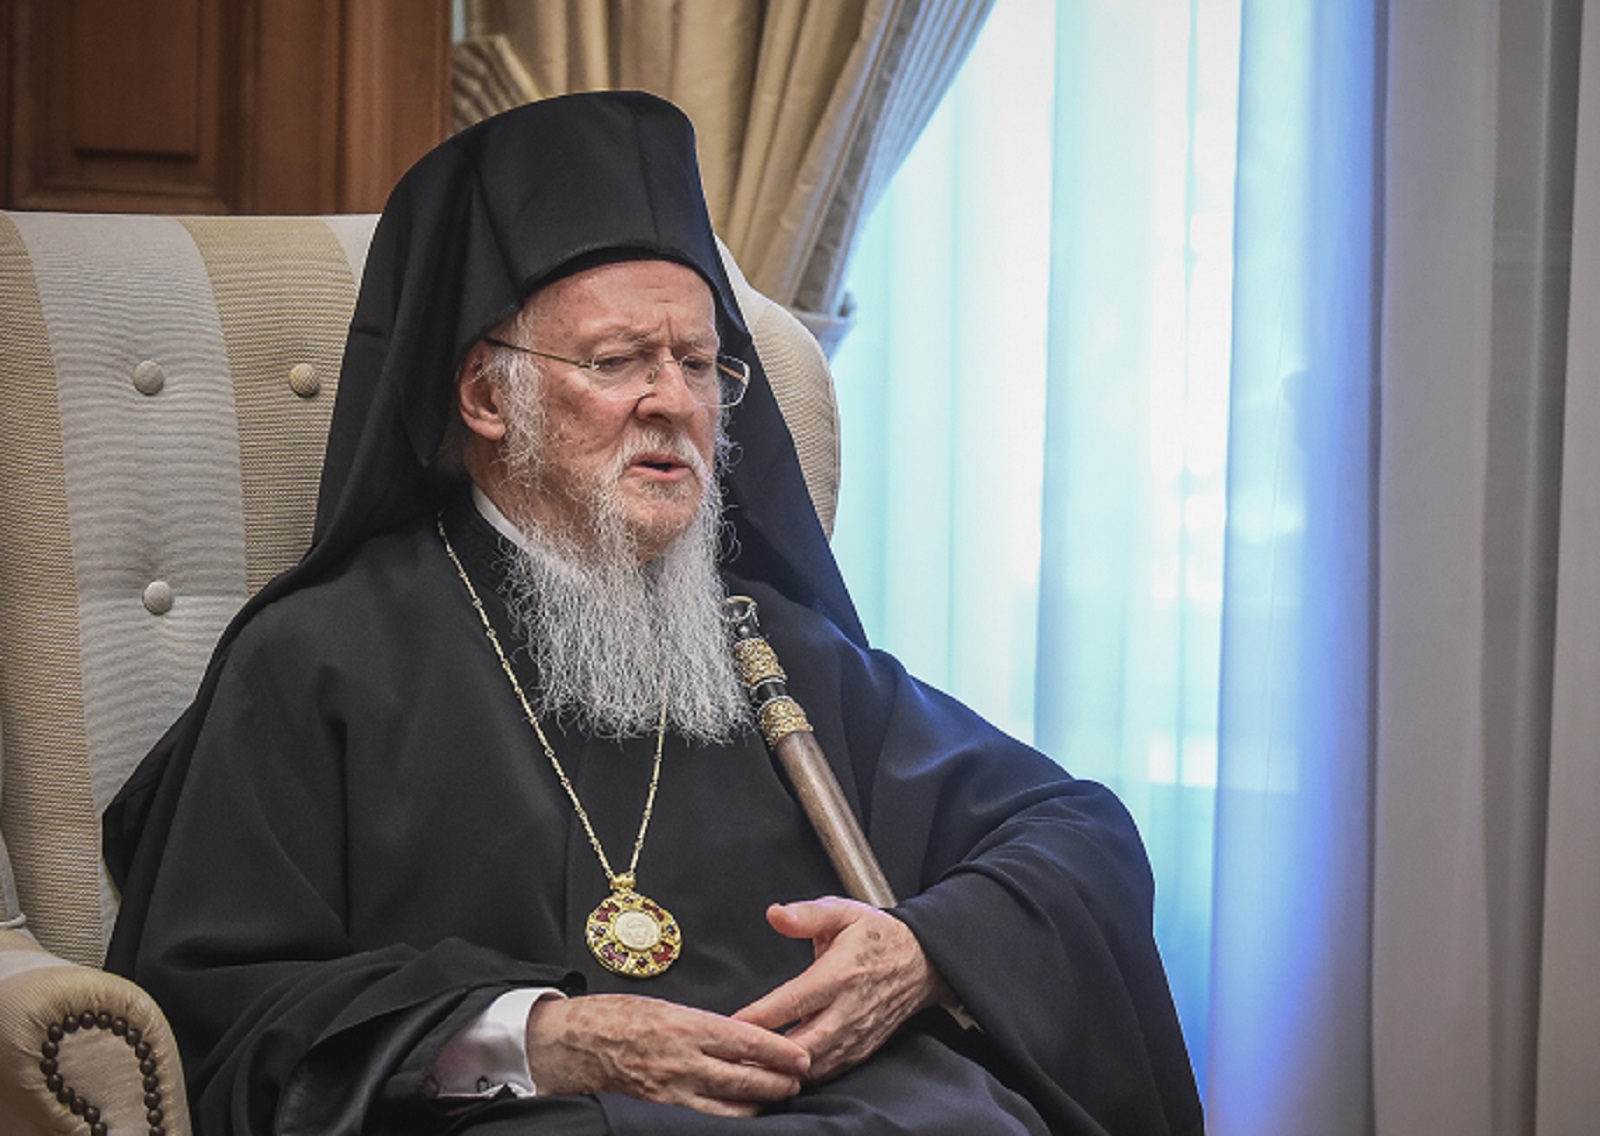 Στην Πολωνία ο Οικουμενικός Πατριάρχης Βαρθολομαίος – Θα επισκεφθεί κέντρα φιλοξενίας προσφύγων